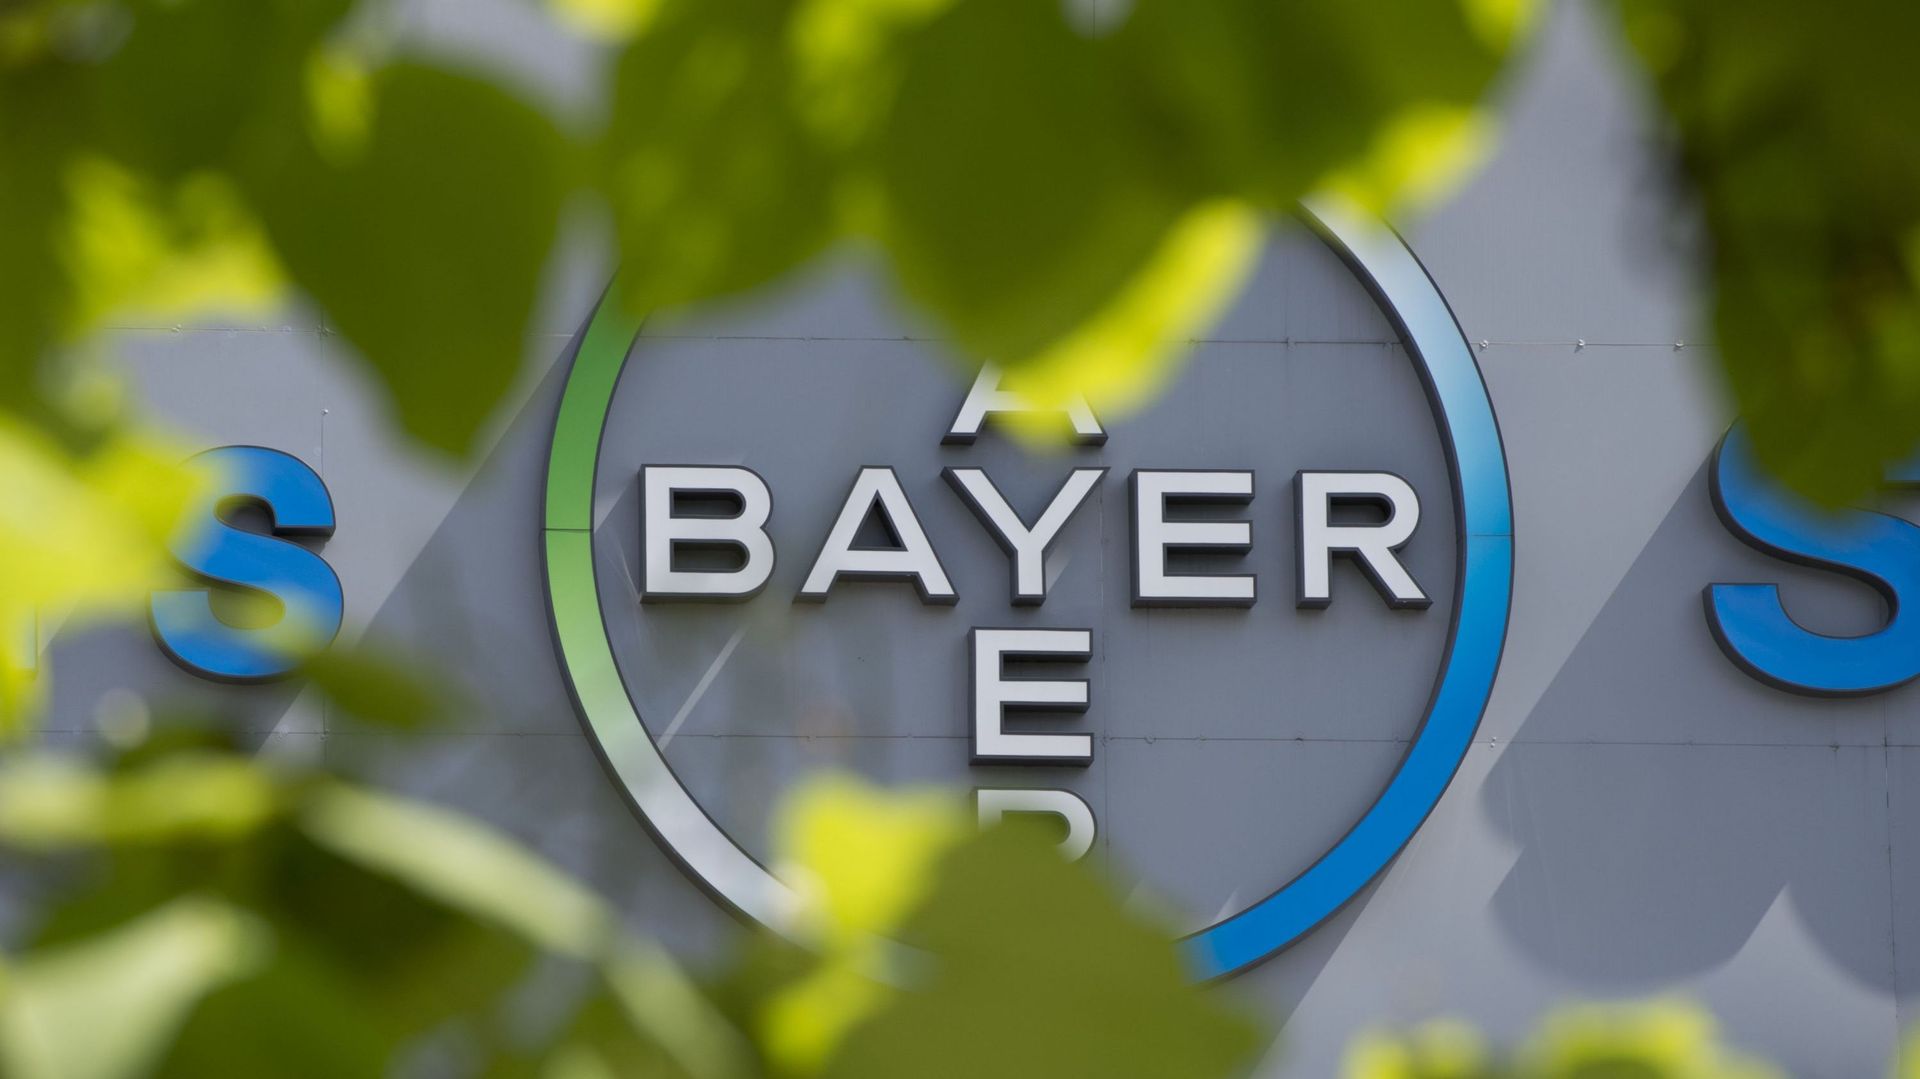 La seule entreprise Bayer déclarait en 2014 2,5 millions d'euros de frais de lobbying auprès des institutions européennes. 